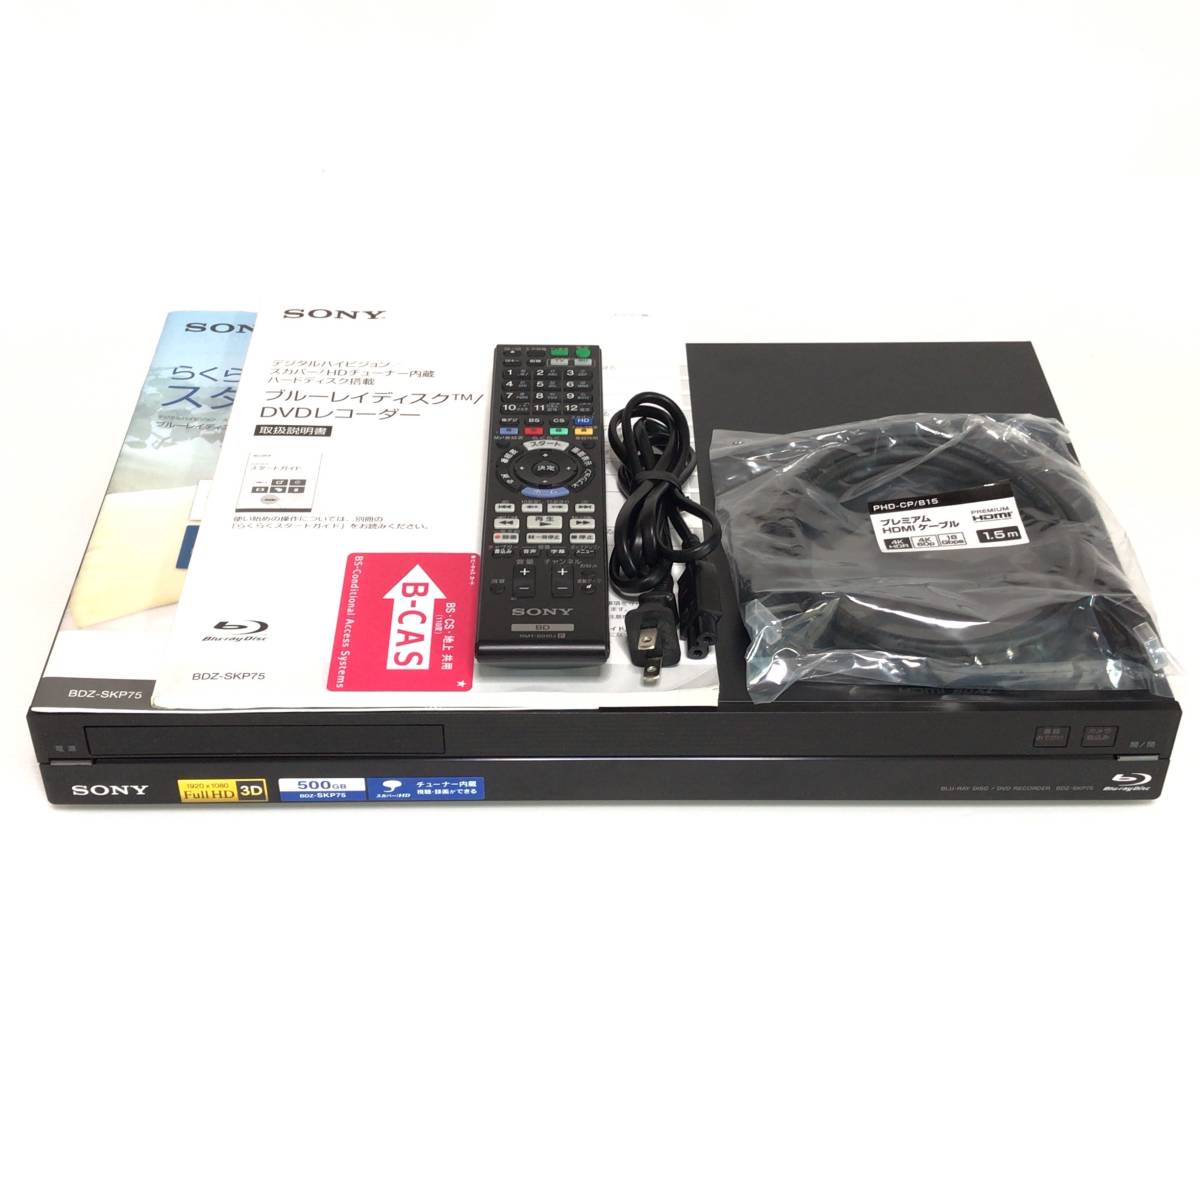 美品 SONY 500GB 2チューナー ブルーレイレコーダー BDZ-SKP75